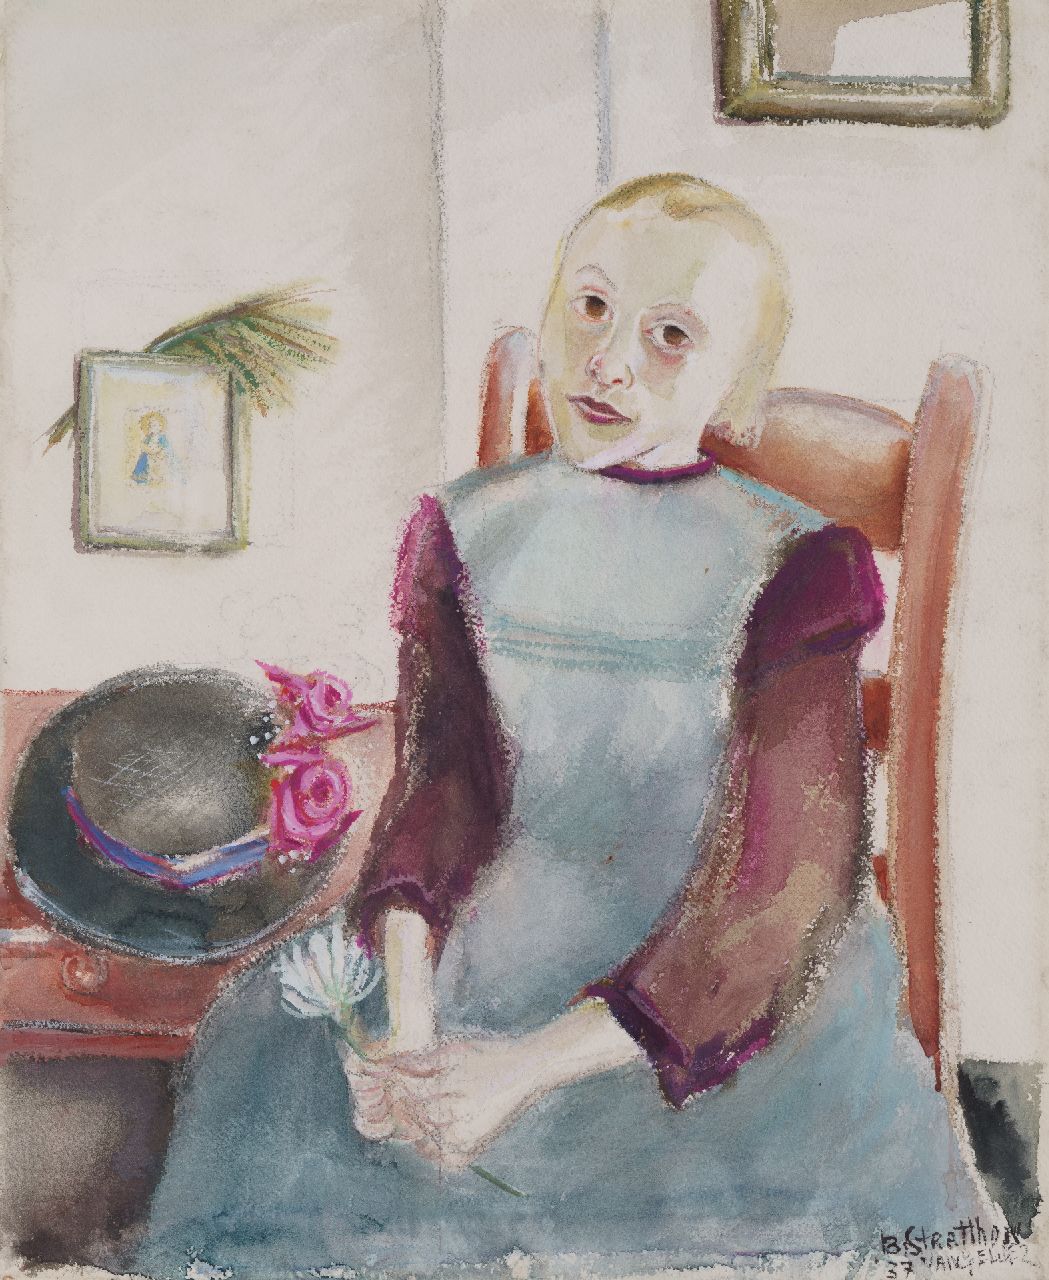 Gelder R. van | Rebecca 'Bobette' van Gelder, Meisje met bloem, aquarel op papier 50,0 x 41,6 cm, gesigneerd rechtsonder met pseudoniem 'B. Stratthon van Gelder' en gedateerd '37